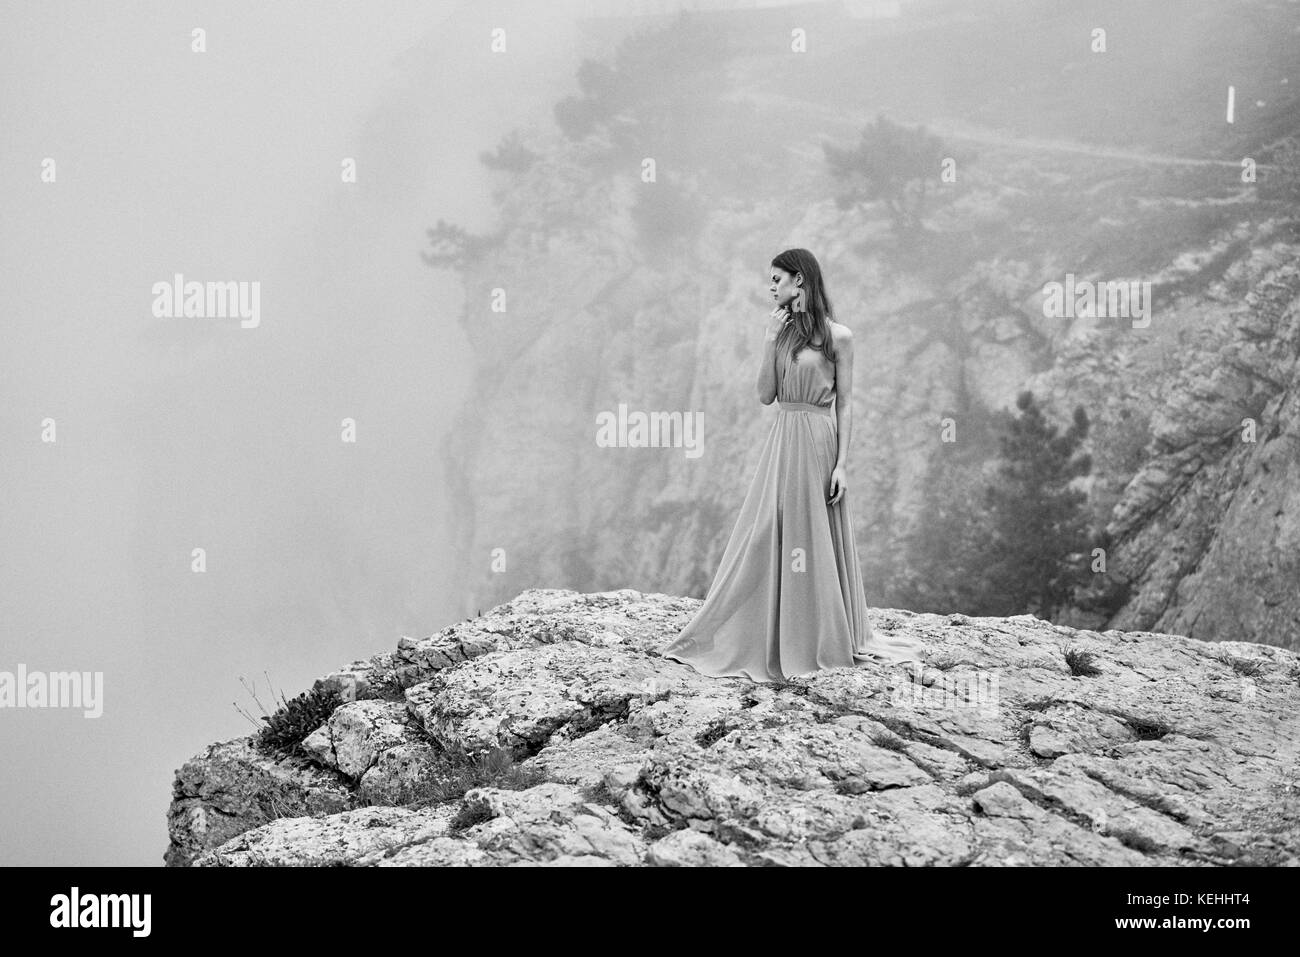 Frau trägt Kleid auf Stein im Nebel stehen Stockfoto